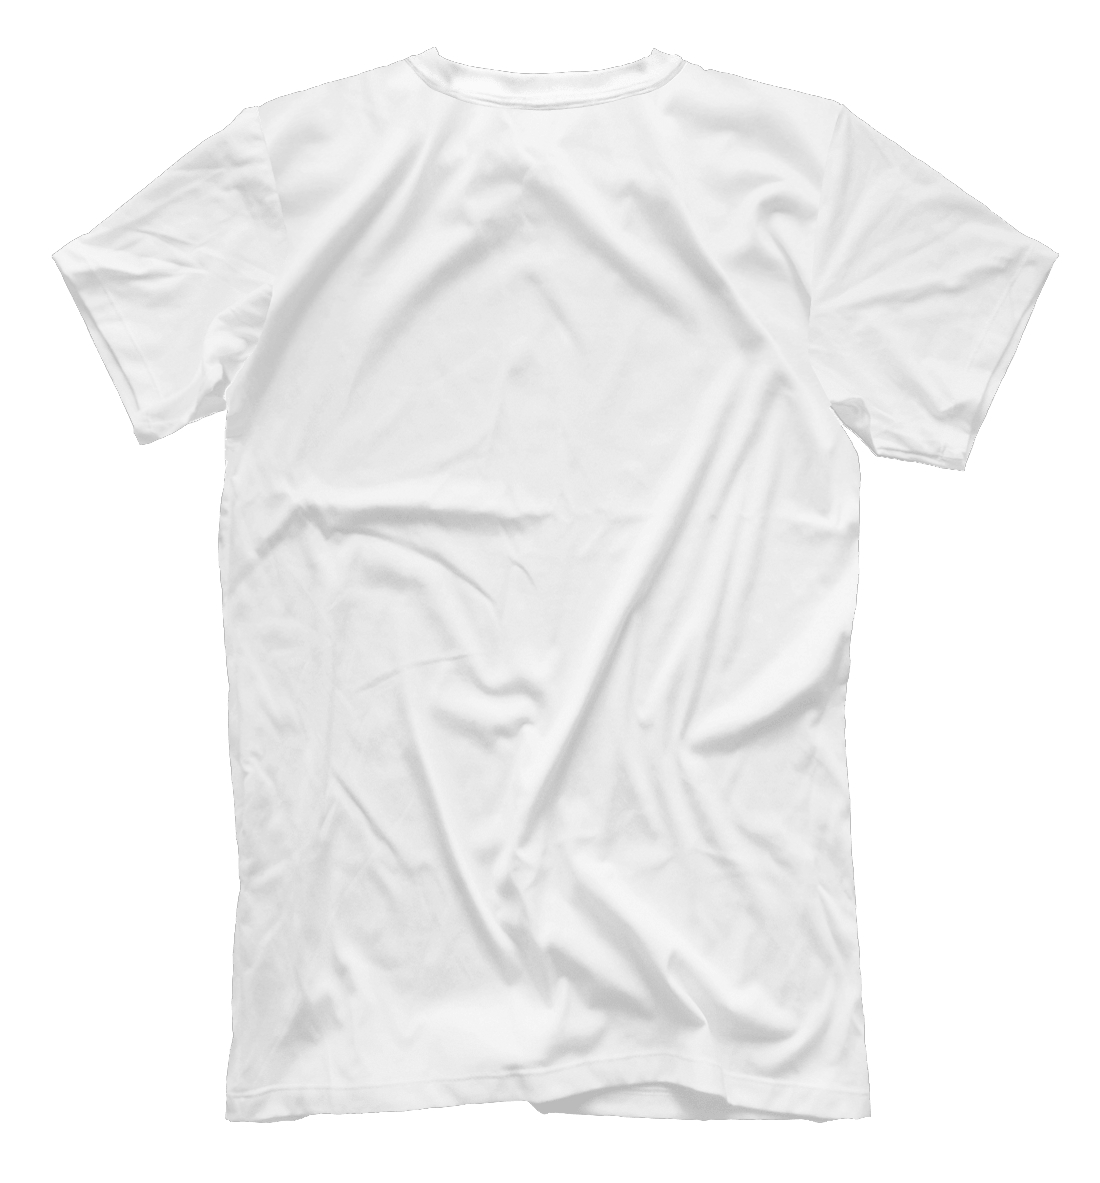 Мужская футболка с принтом Милан  - фото 2-спина